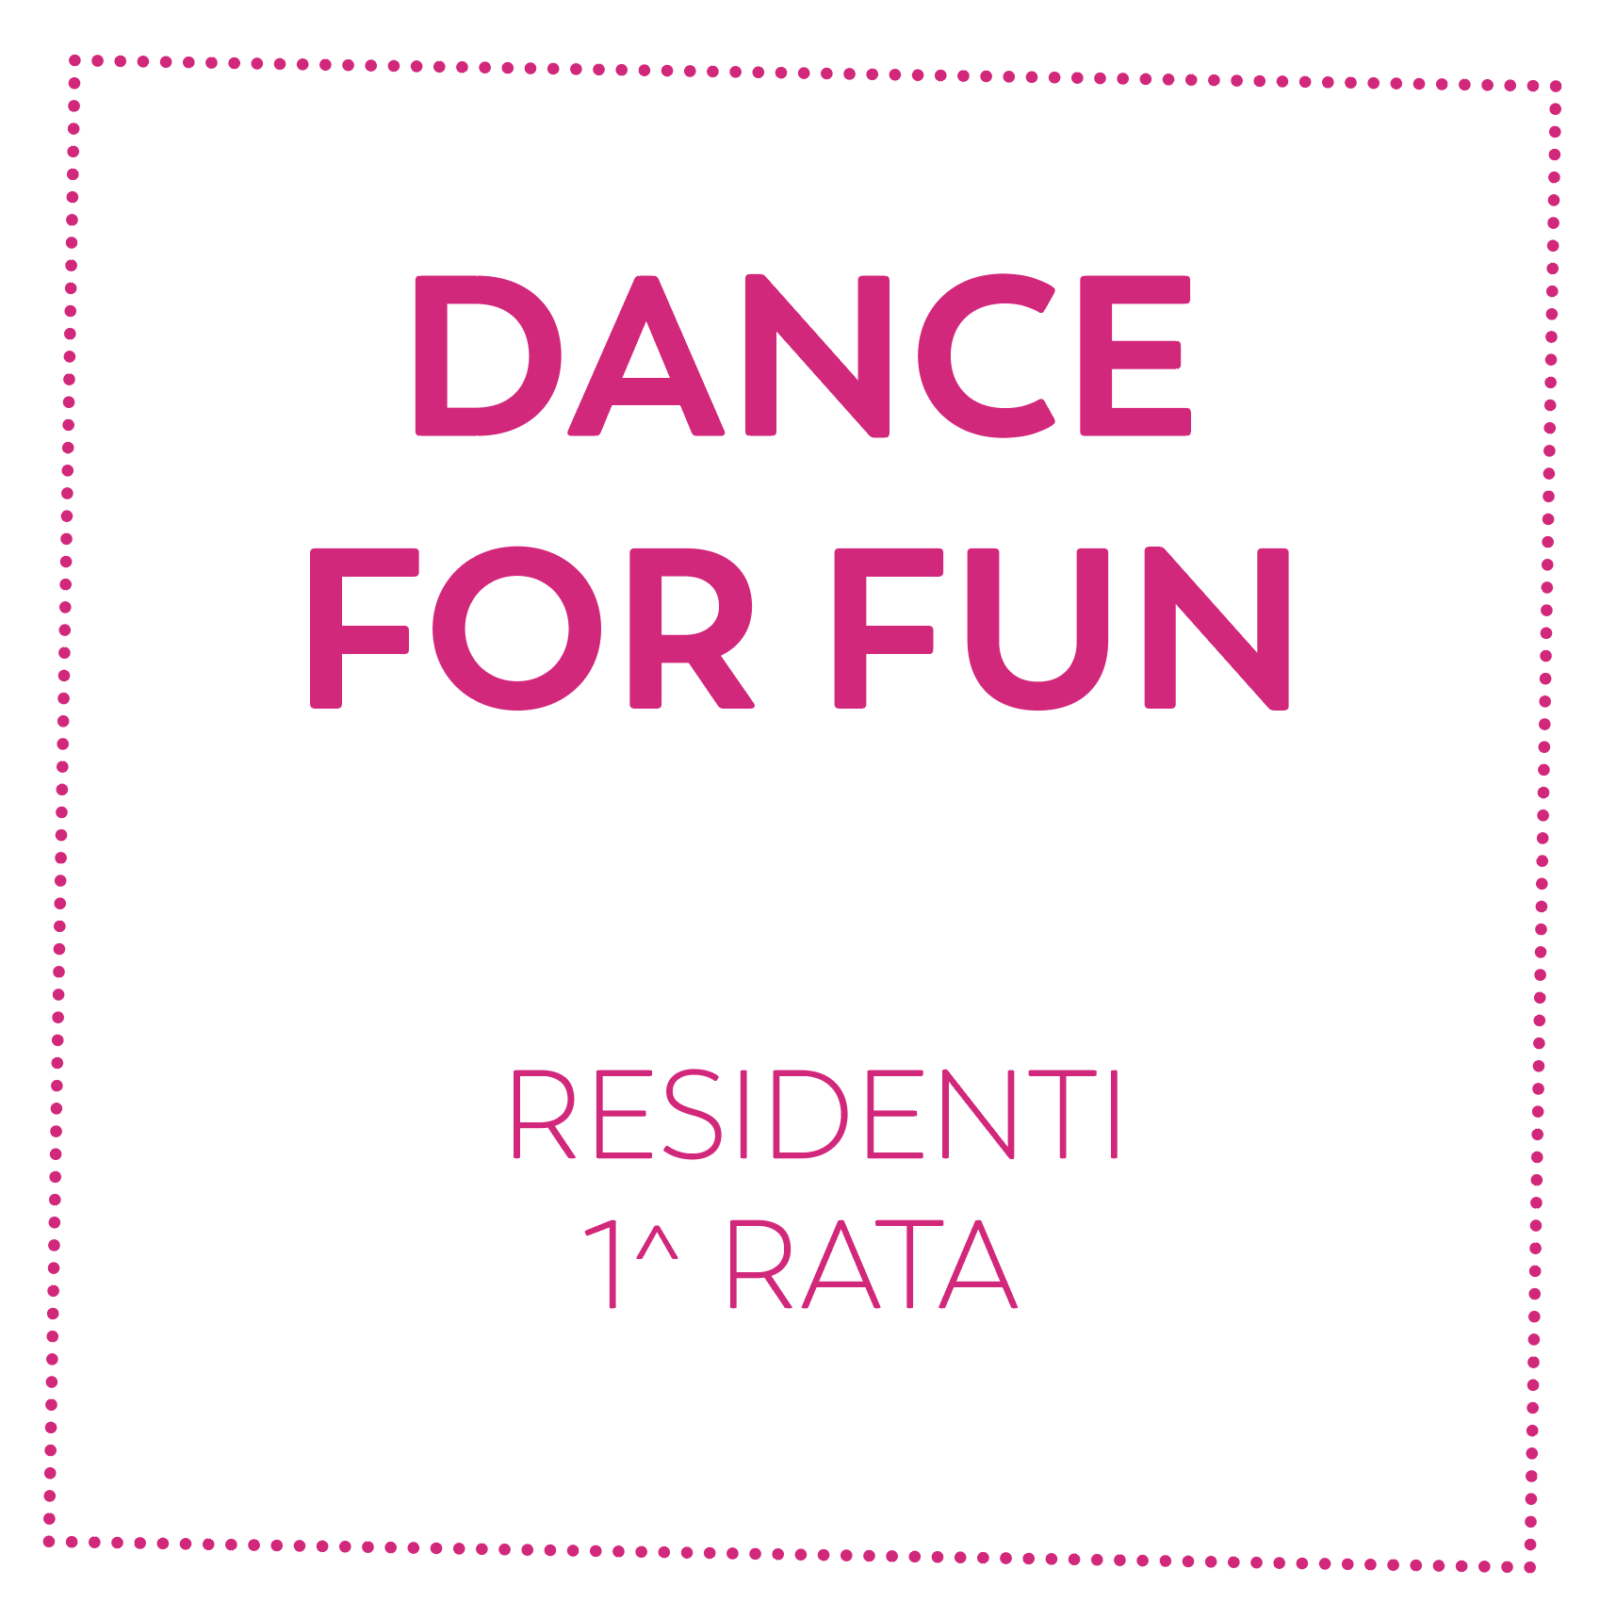 DANCE FOR FUN - RESIDENTI - 1^ RATA